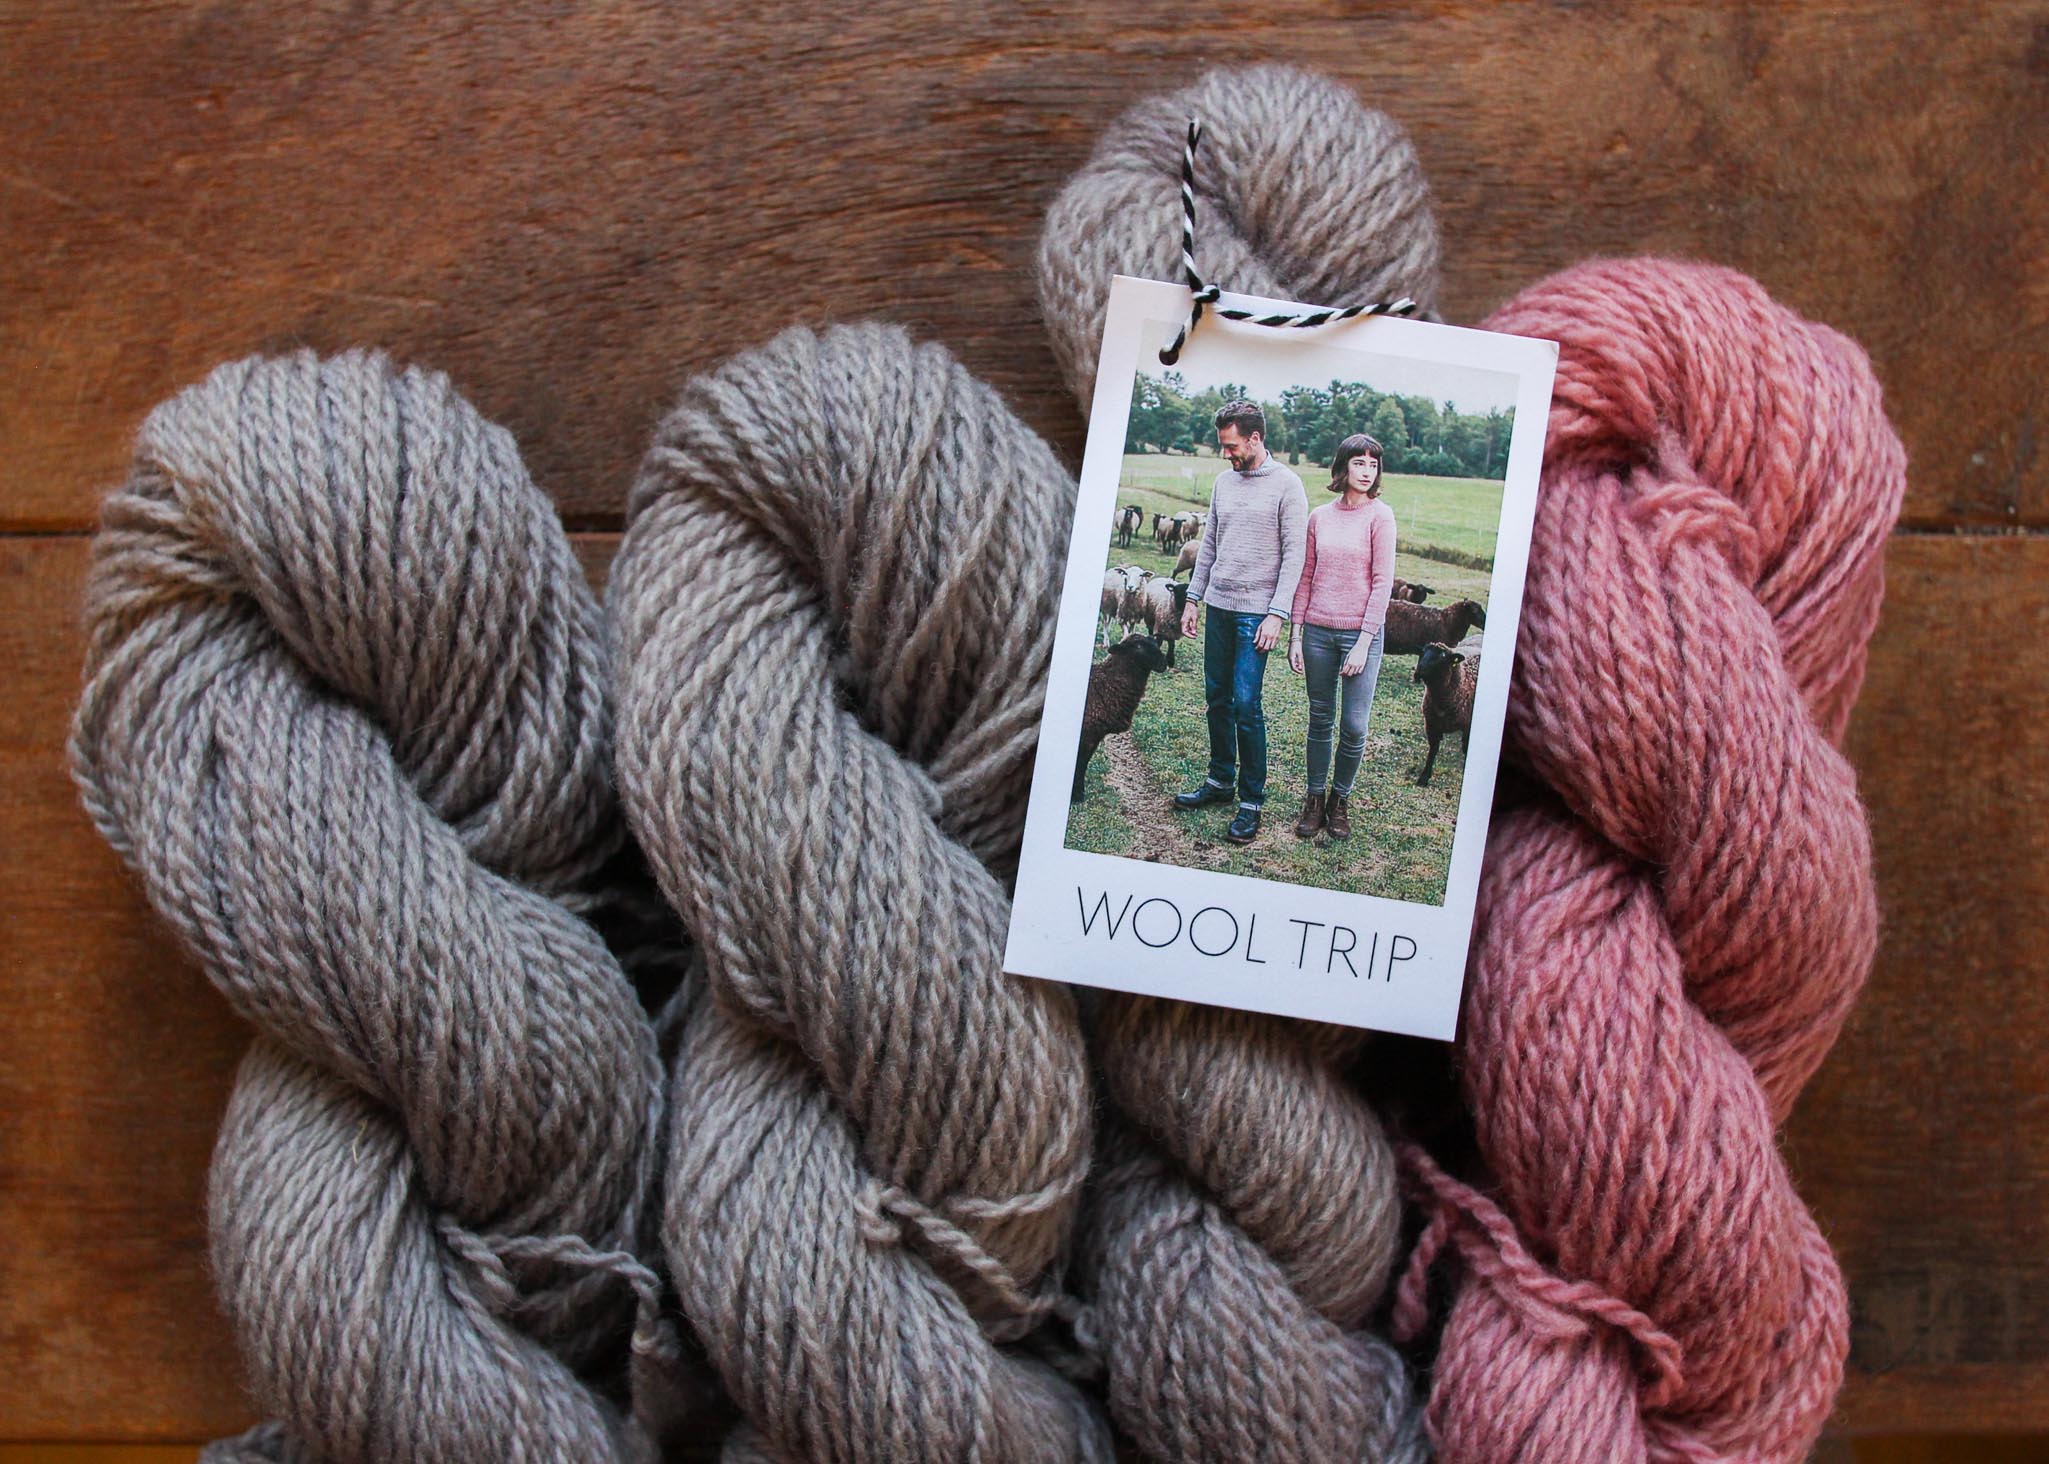 Wool Trip by Hannah Fettig